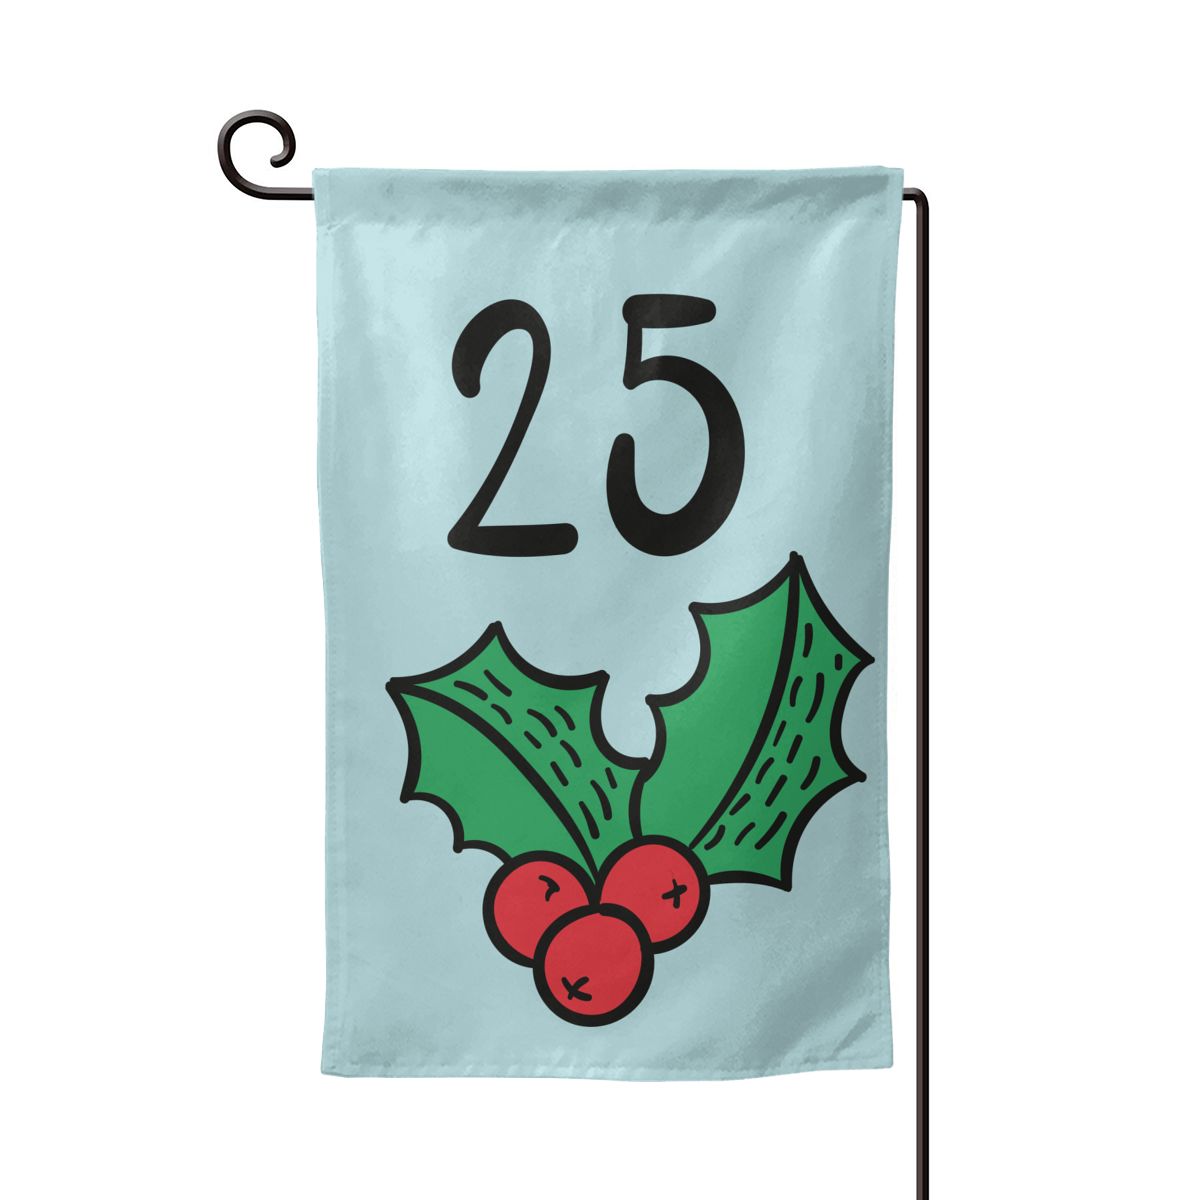 Cute Christmas Outdoor Garden Flag 12.5" x 18"